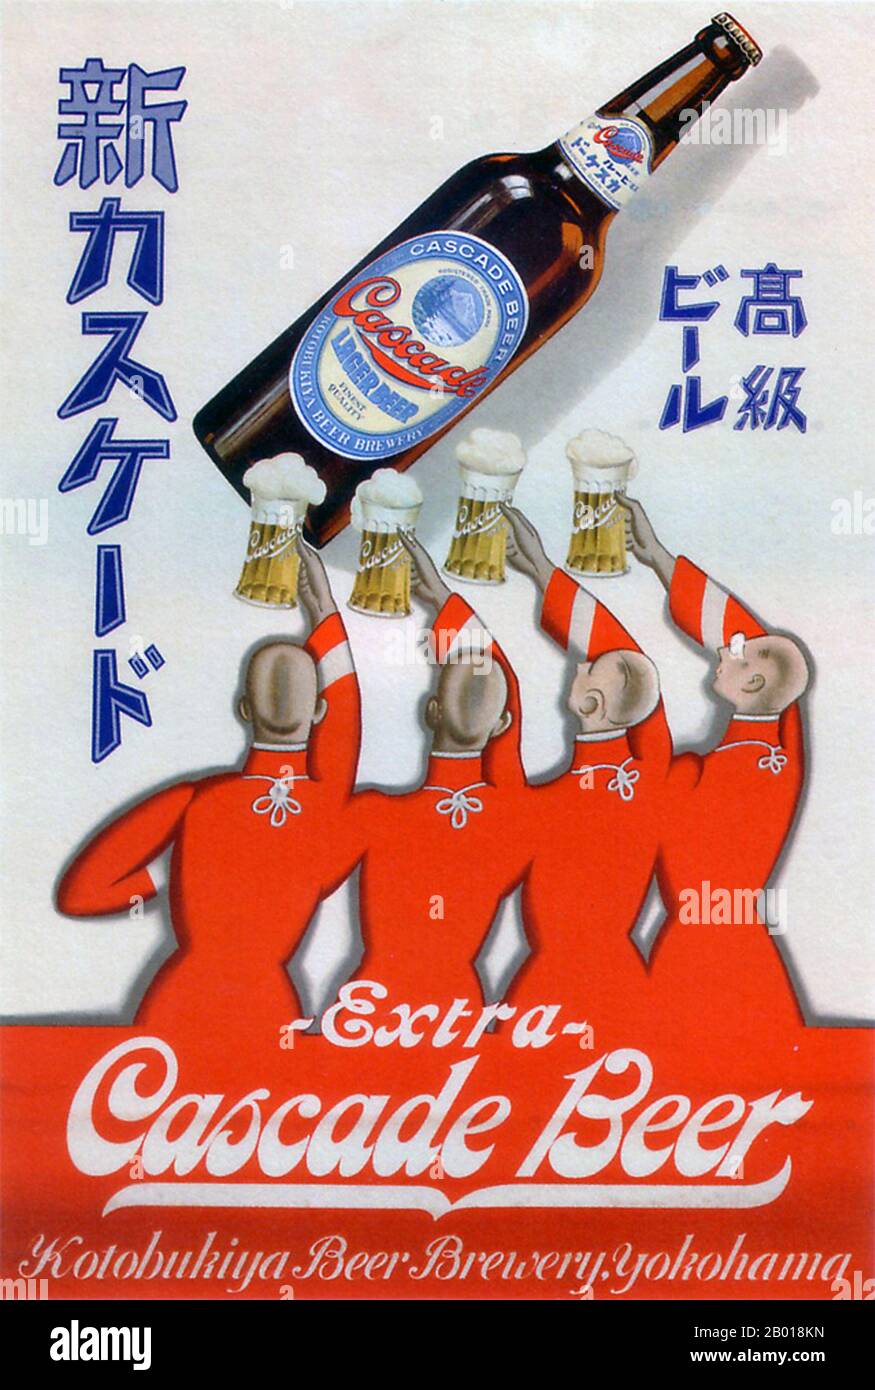 Giappone: Poster pubblicitario per Cascade Beer, c. 1929. Quattro uomini in silhouette extol Extra Cascade Beer dalla fabbrica di birra Kotobukiya di Yokohama. Foto Stock